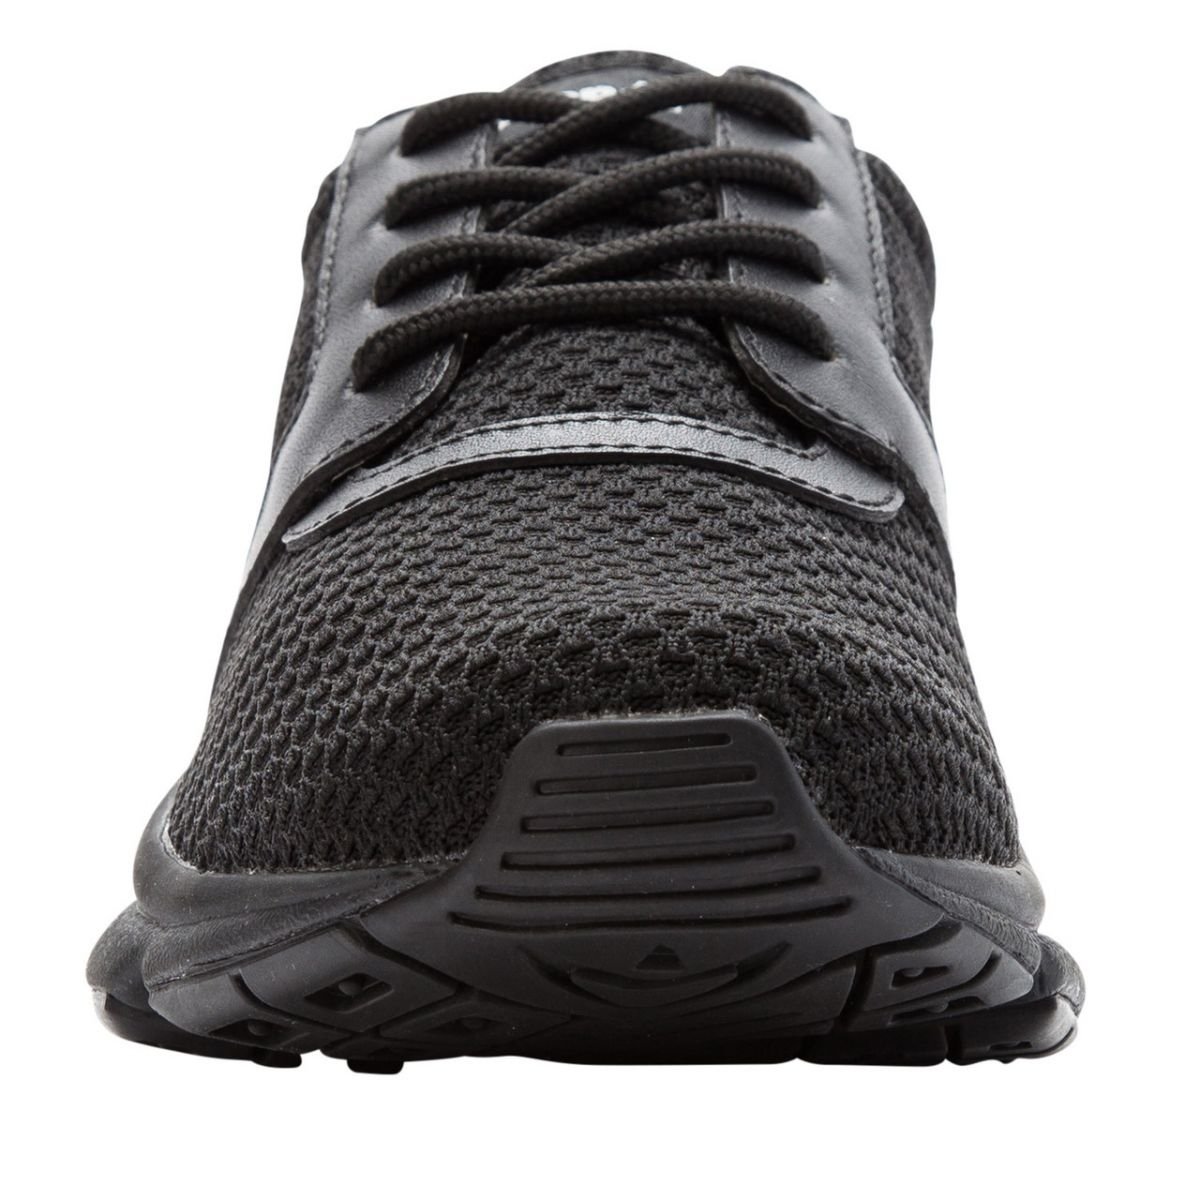 Propet Women's Stability X Walking Shoe Black - WAA032MBLK BLACK - BLACK, 10 Wide